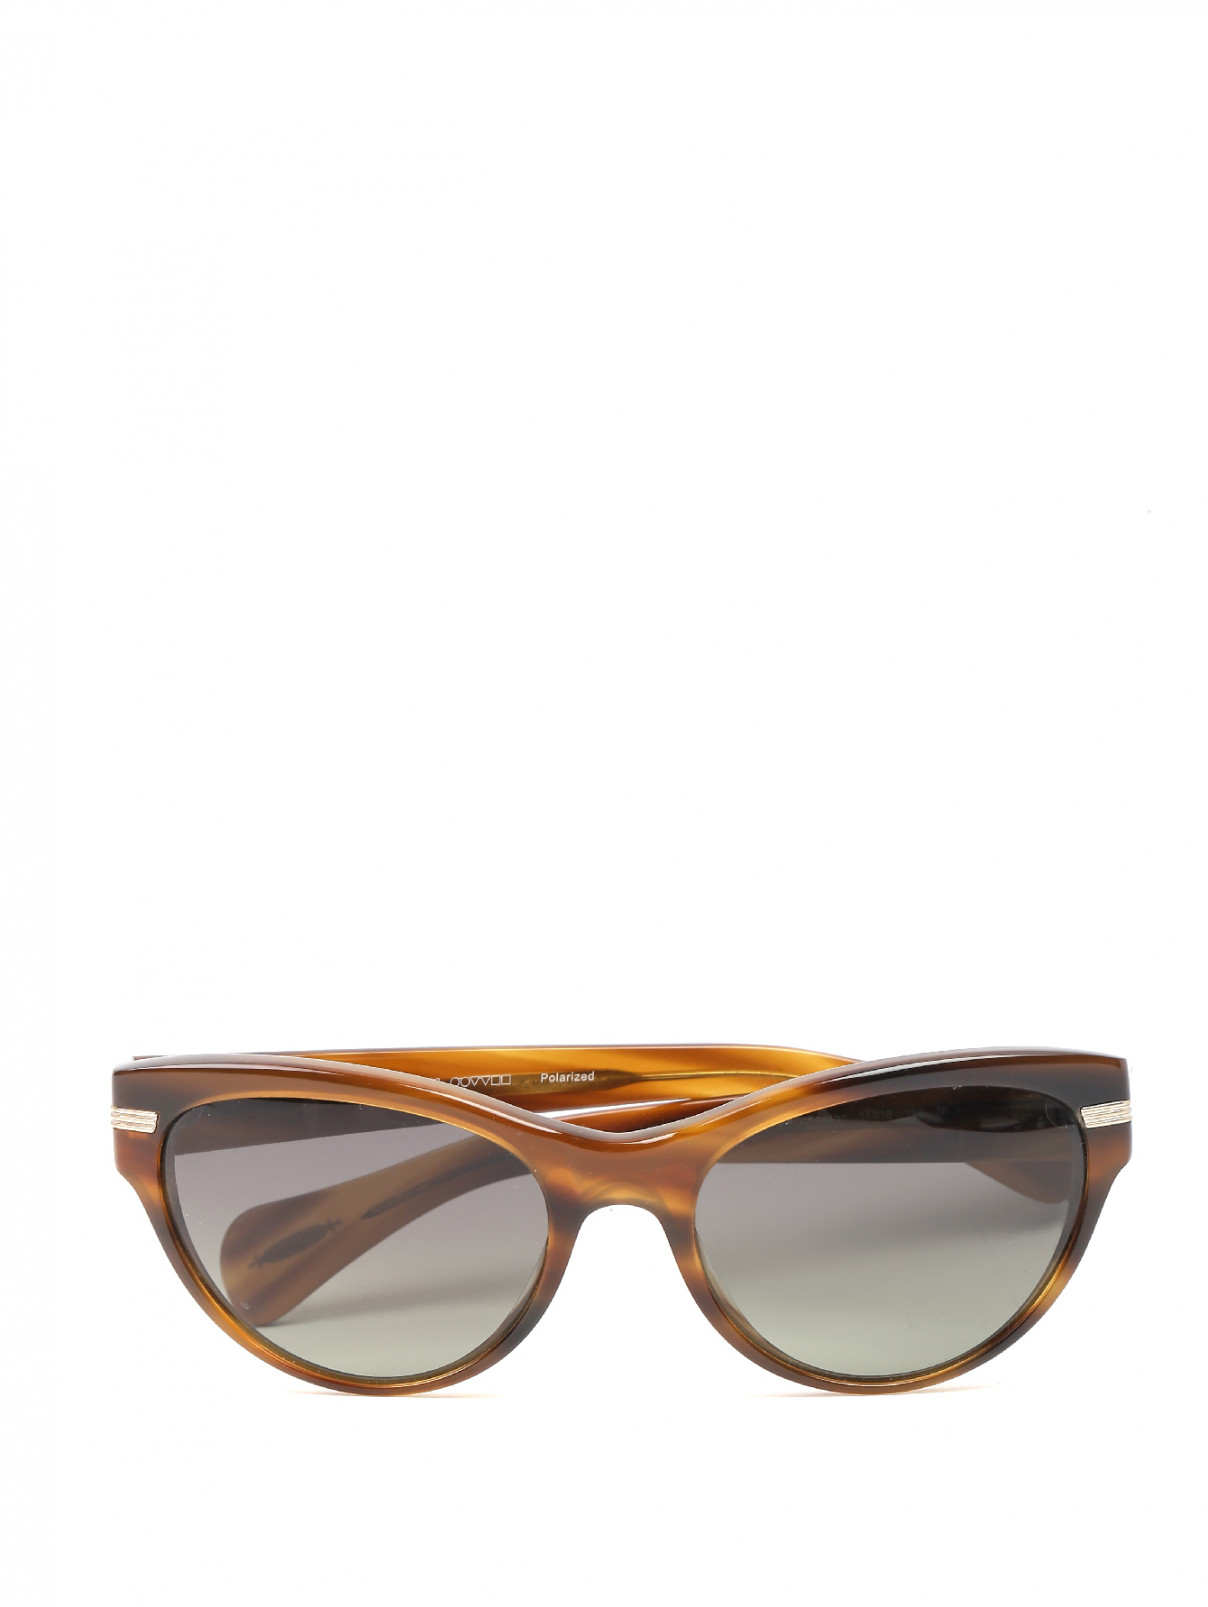 Солнцезащитные очки в пластиковой оправе с узором Oliver Peoples  –  Общий вид  – Цвет:  Коричневый